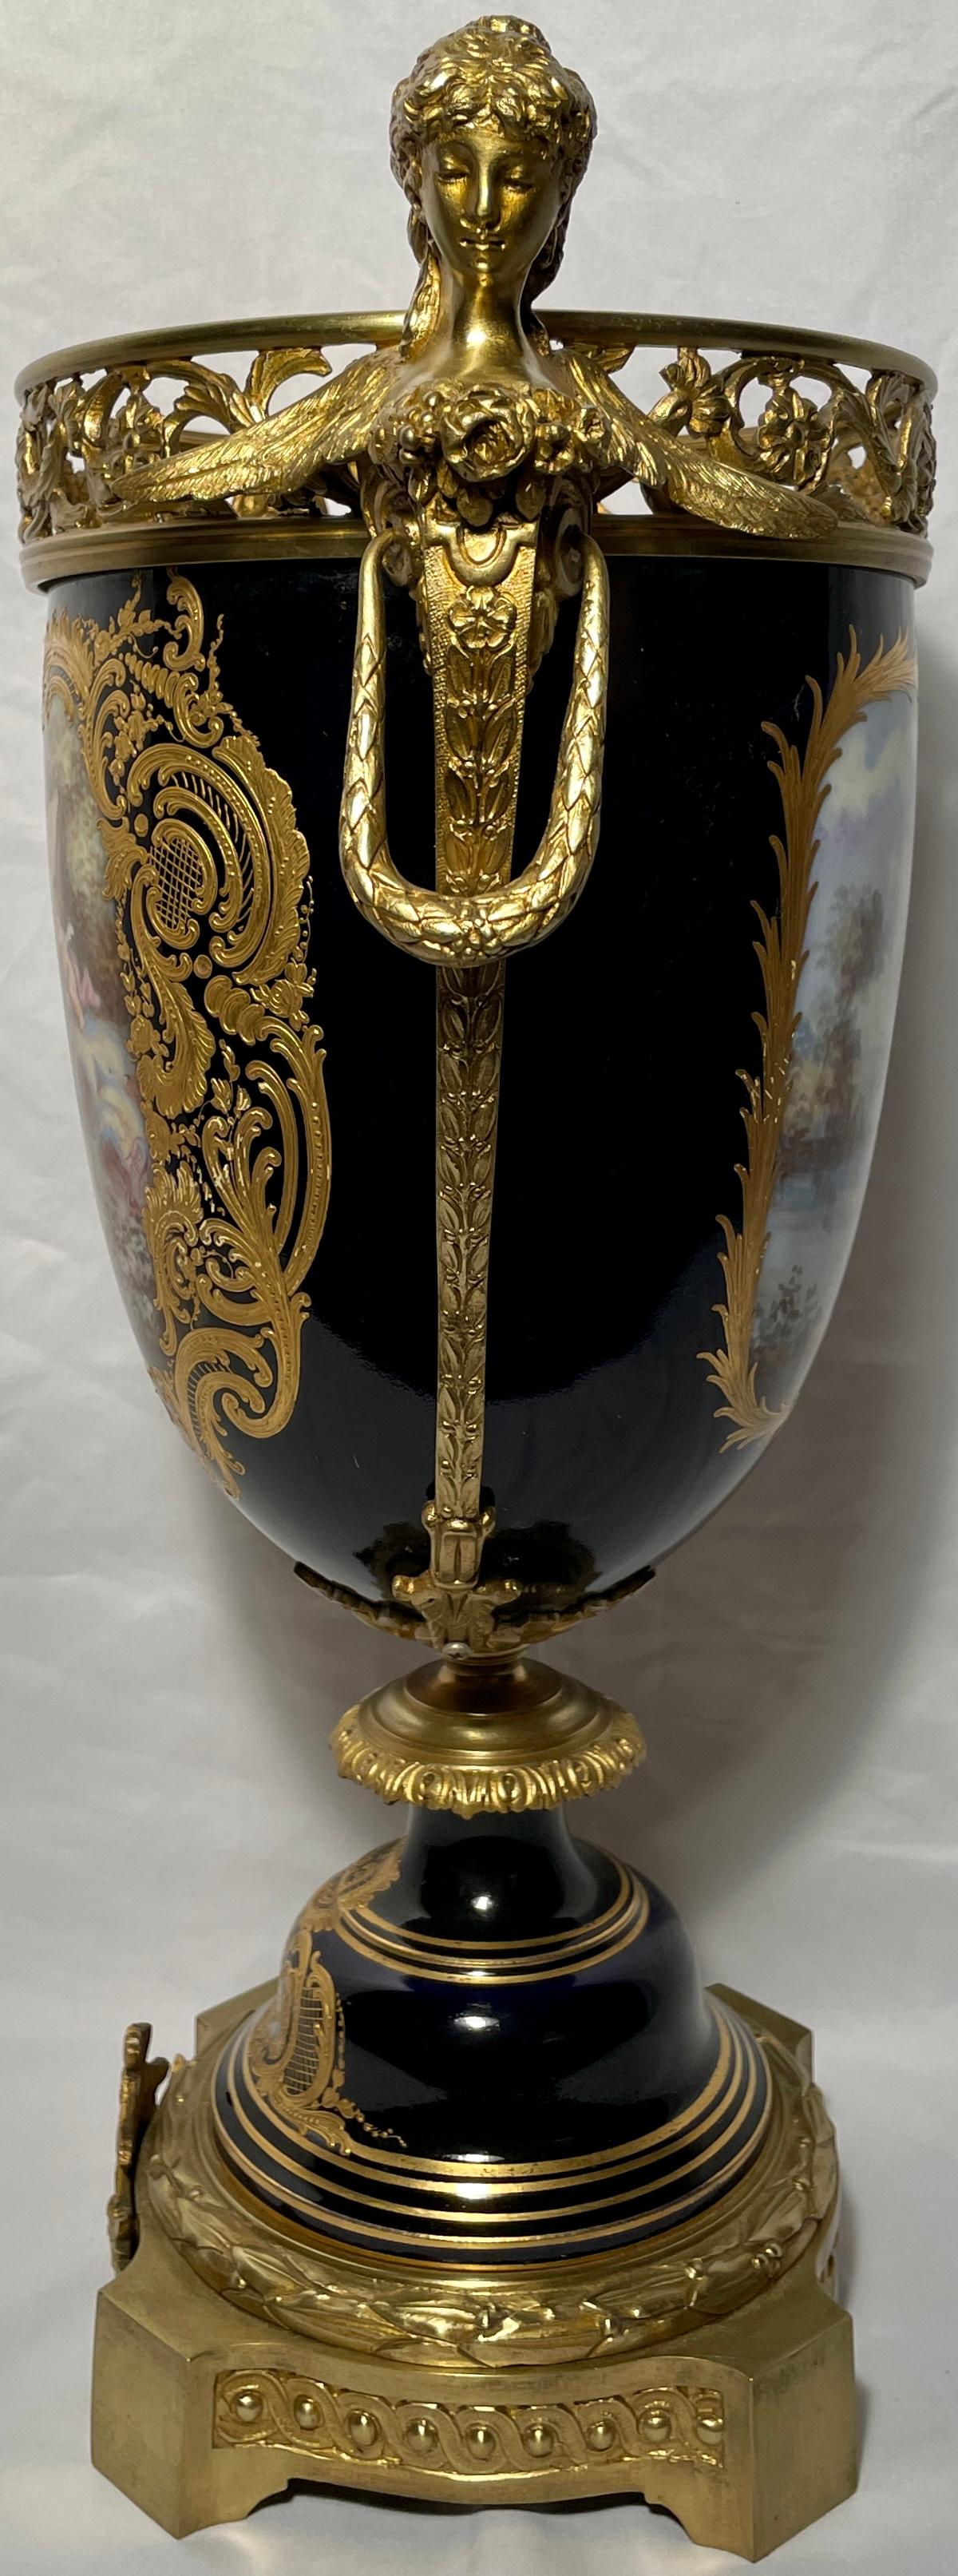 19th Century Antique French Cobalt Blue & Gold Sèvres Porcelain Vase, circa 1860-1880